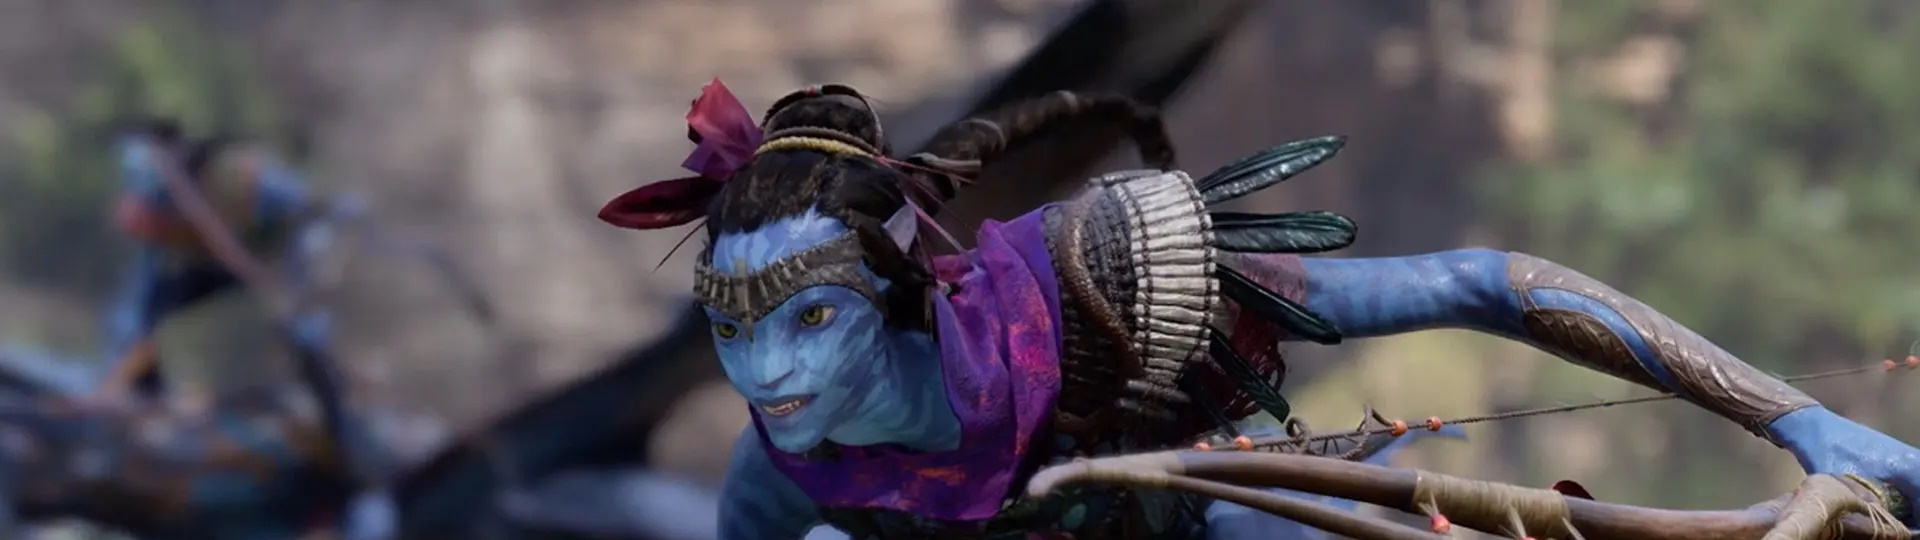 Ubisoft odkládá hru podle filmového Avatara | Novinky